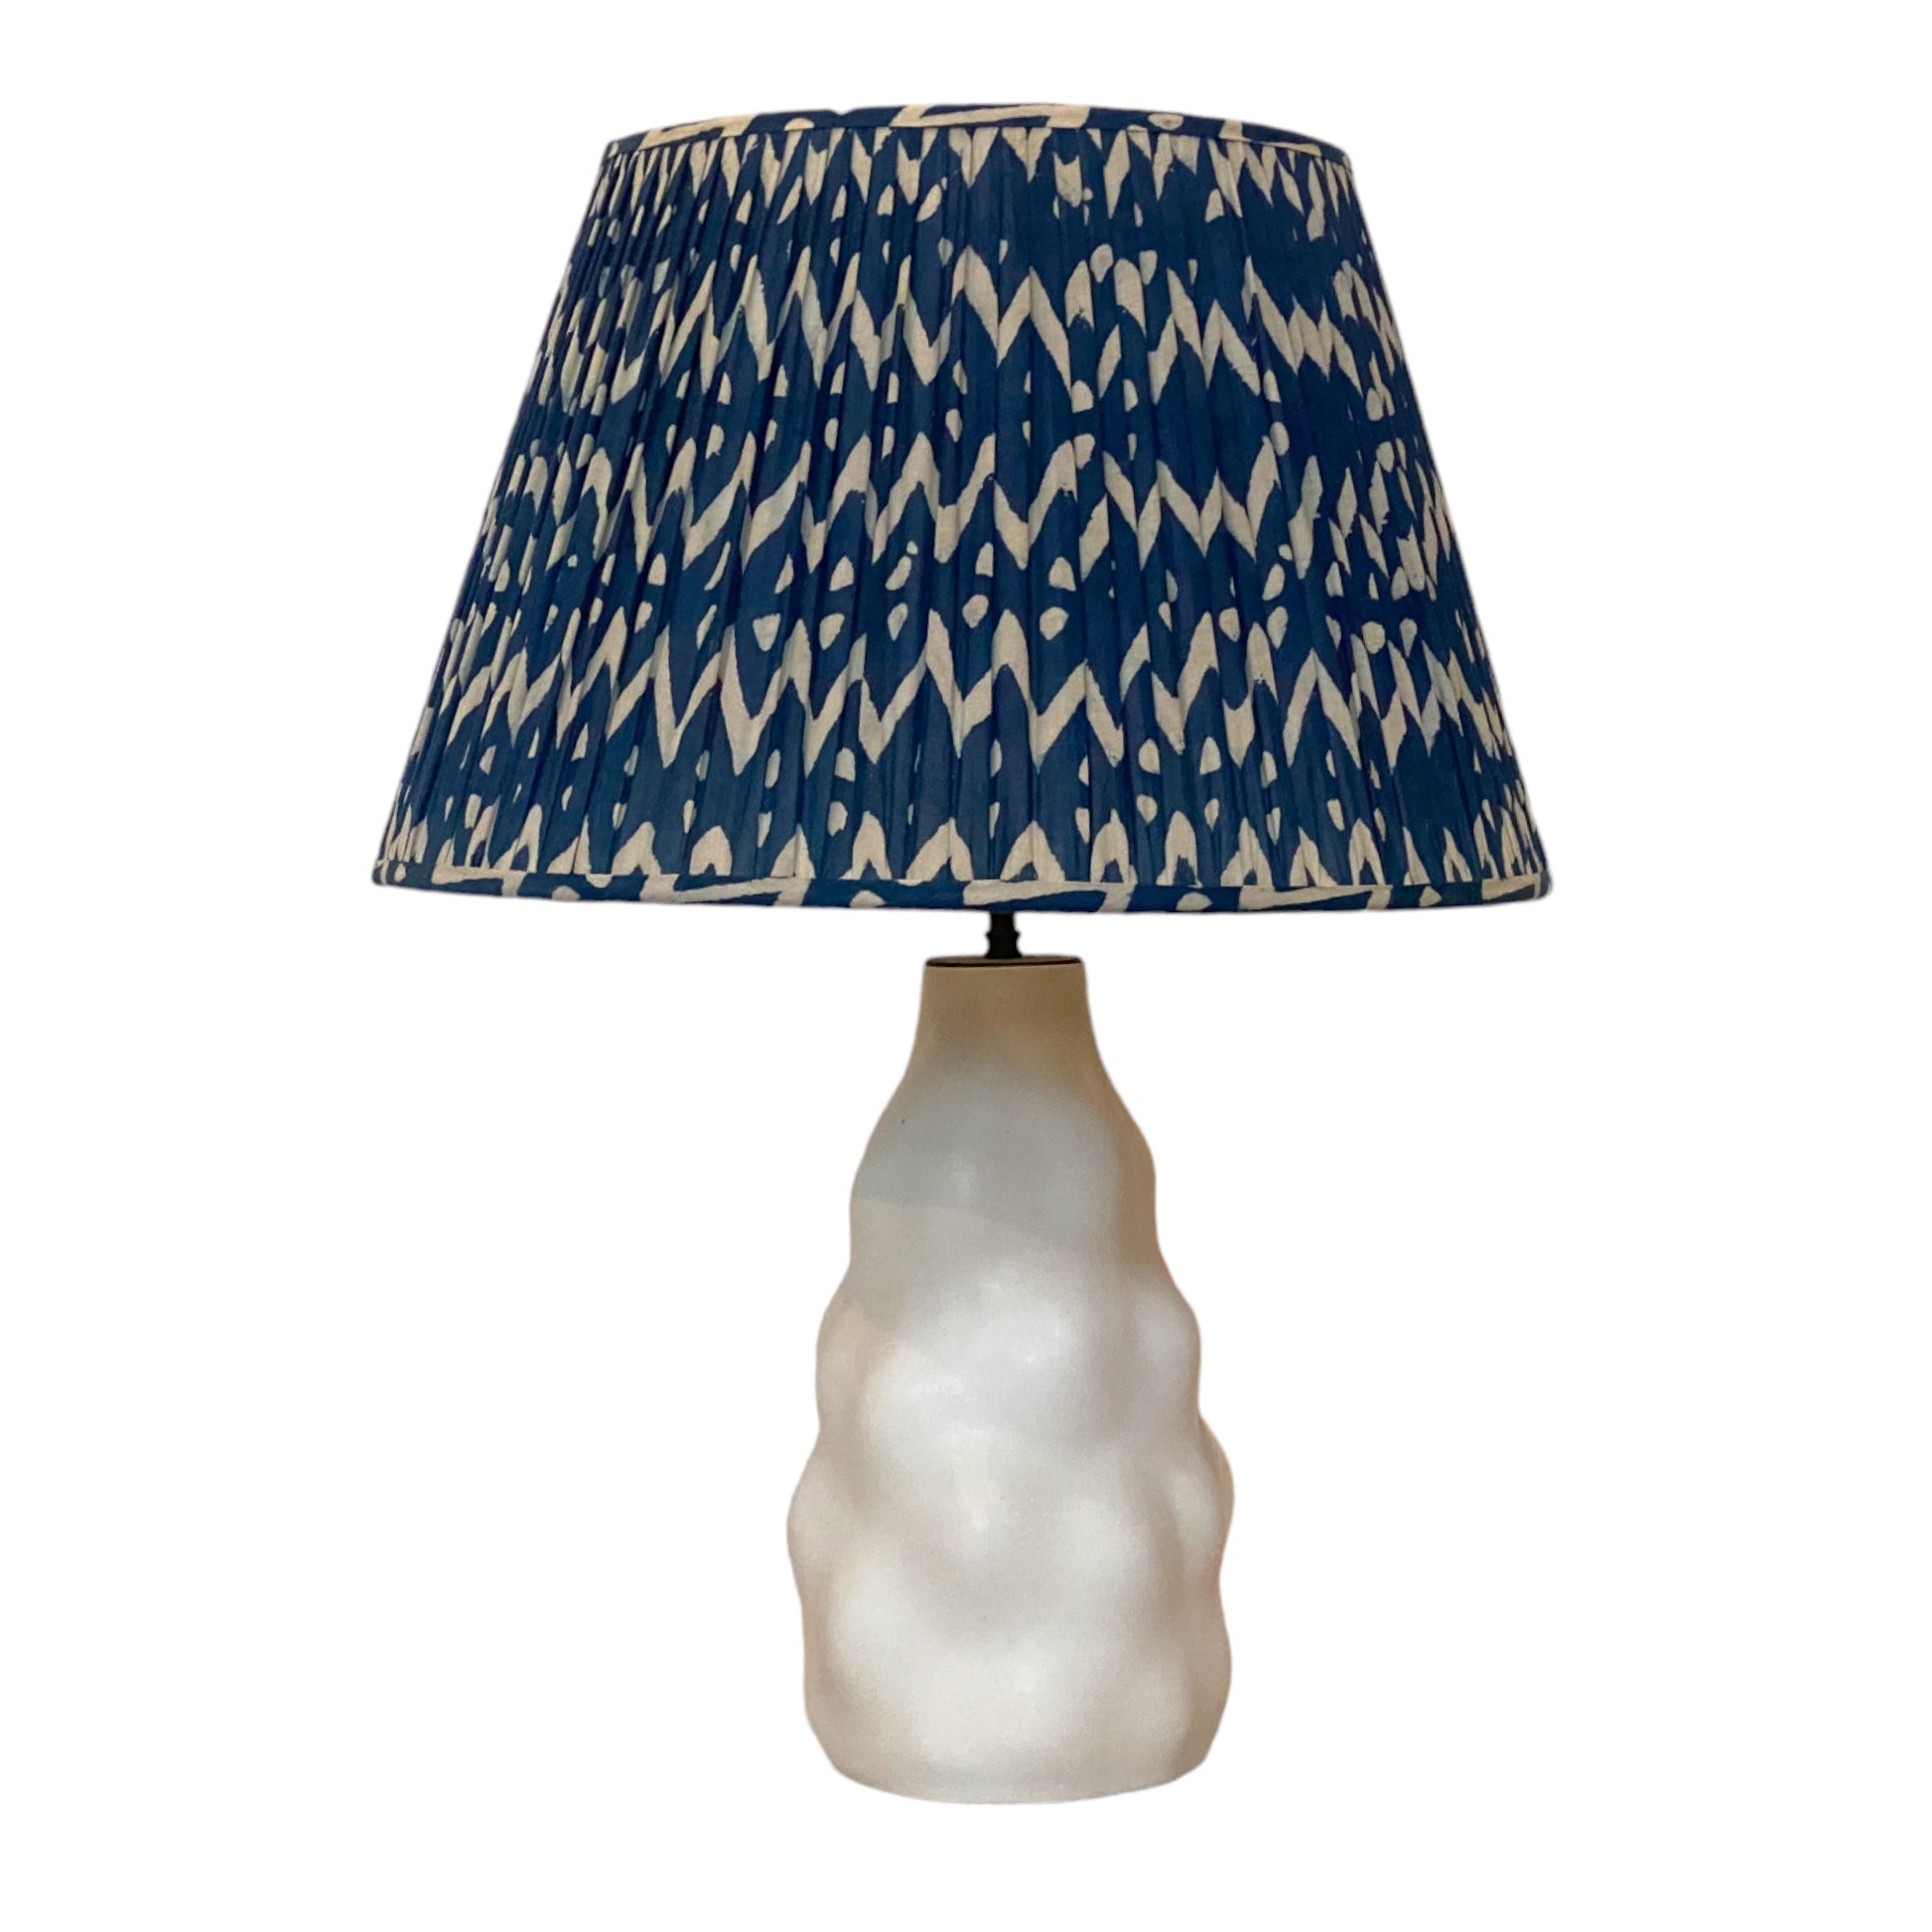 Indigo cotton lampshade on iki lamp